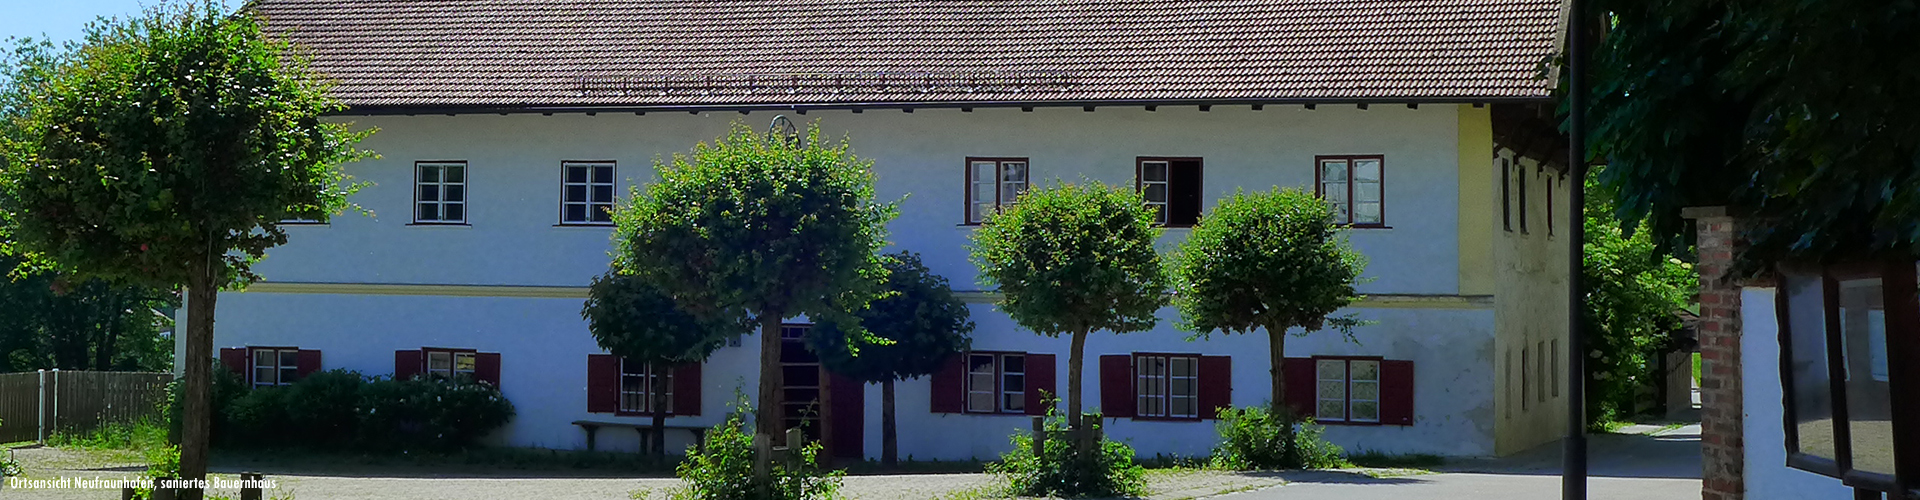 Ortsmitte Neufraunhofen, altes Bauernhaus